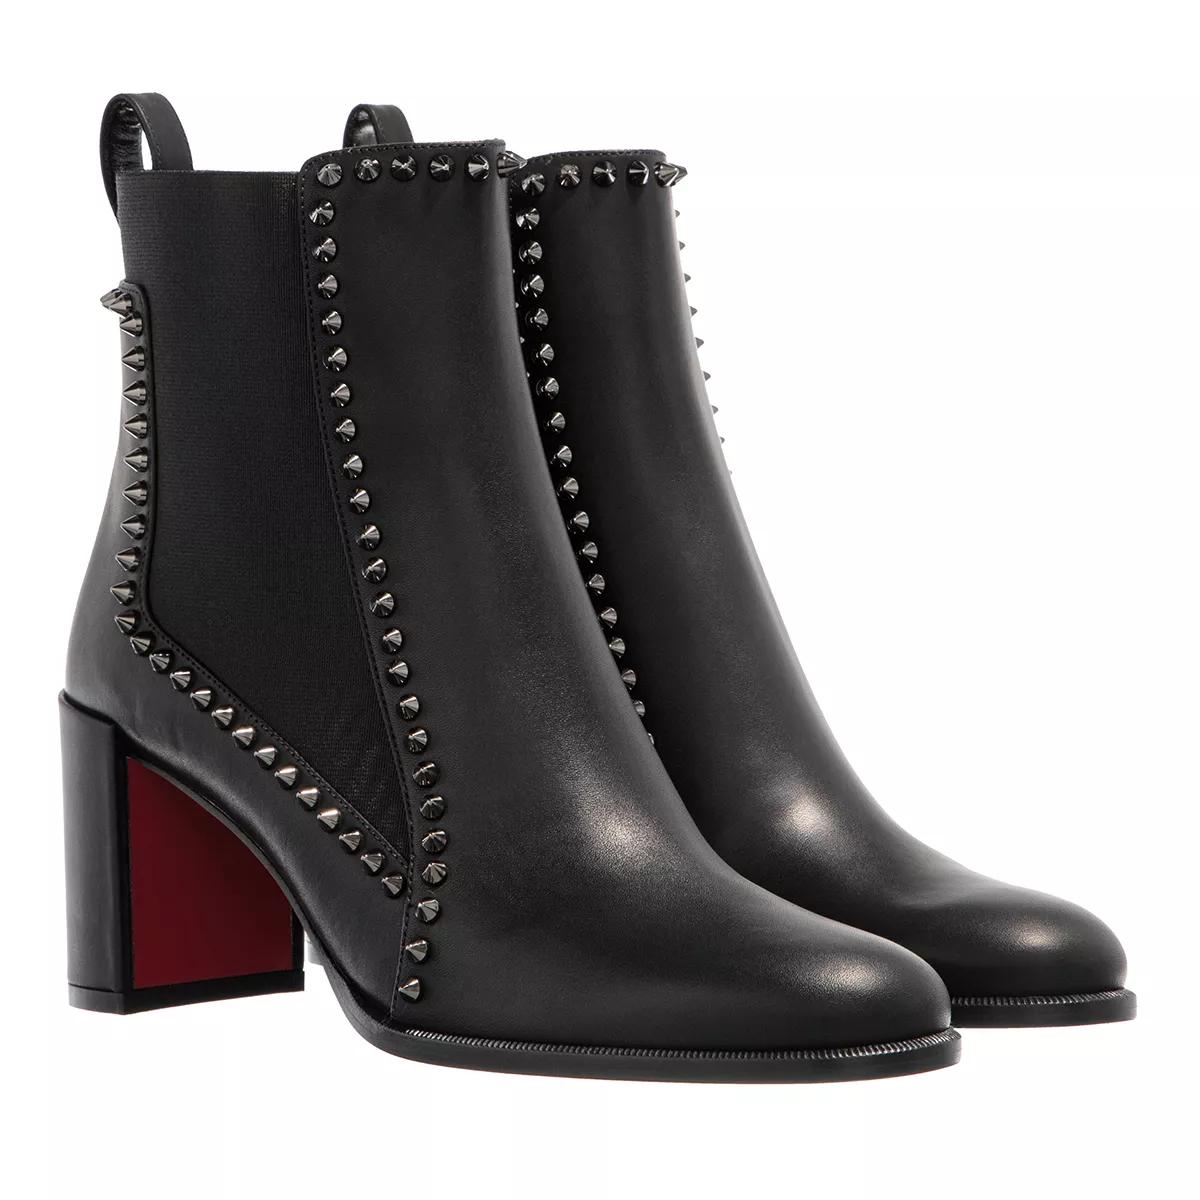 Schuhe für Damen von Christian Louboutin – Online auf YOOX shoppen